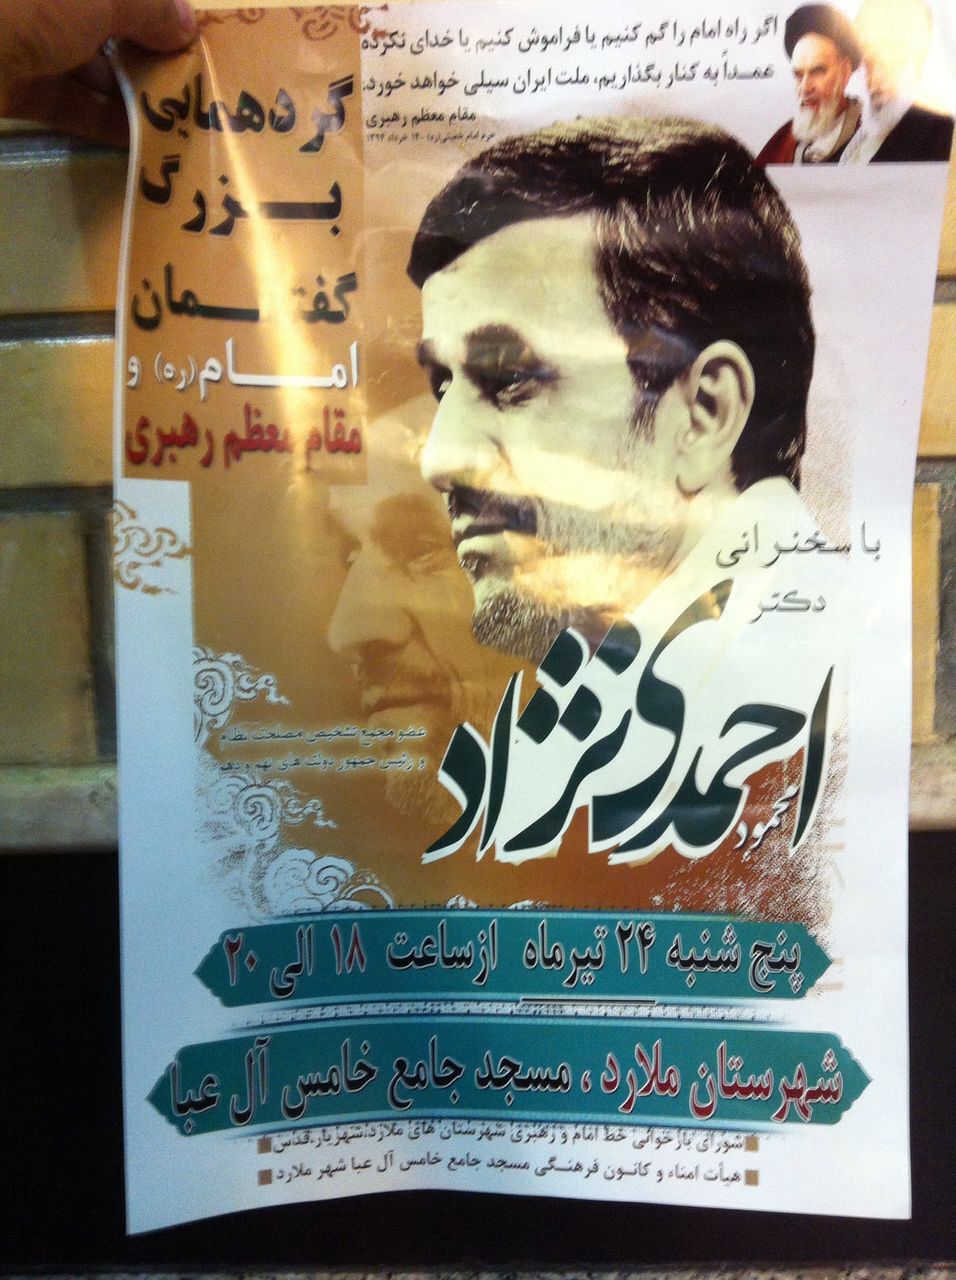 "دیاثت سیاسی" در حاشیه سخنرانی /حواشی سخنرانی احمدی نژاد در ملارد  + تصاویر